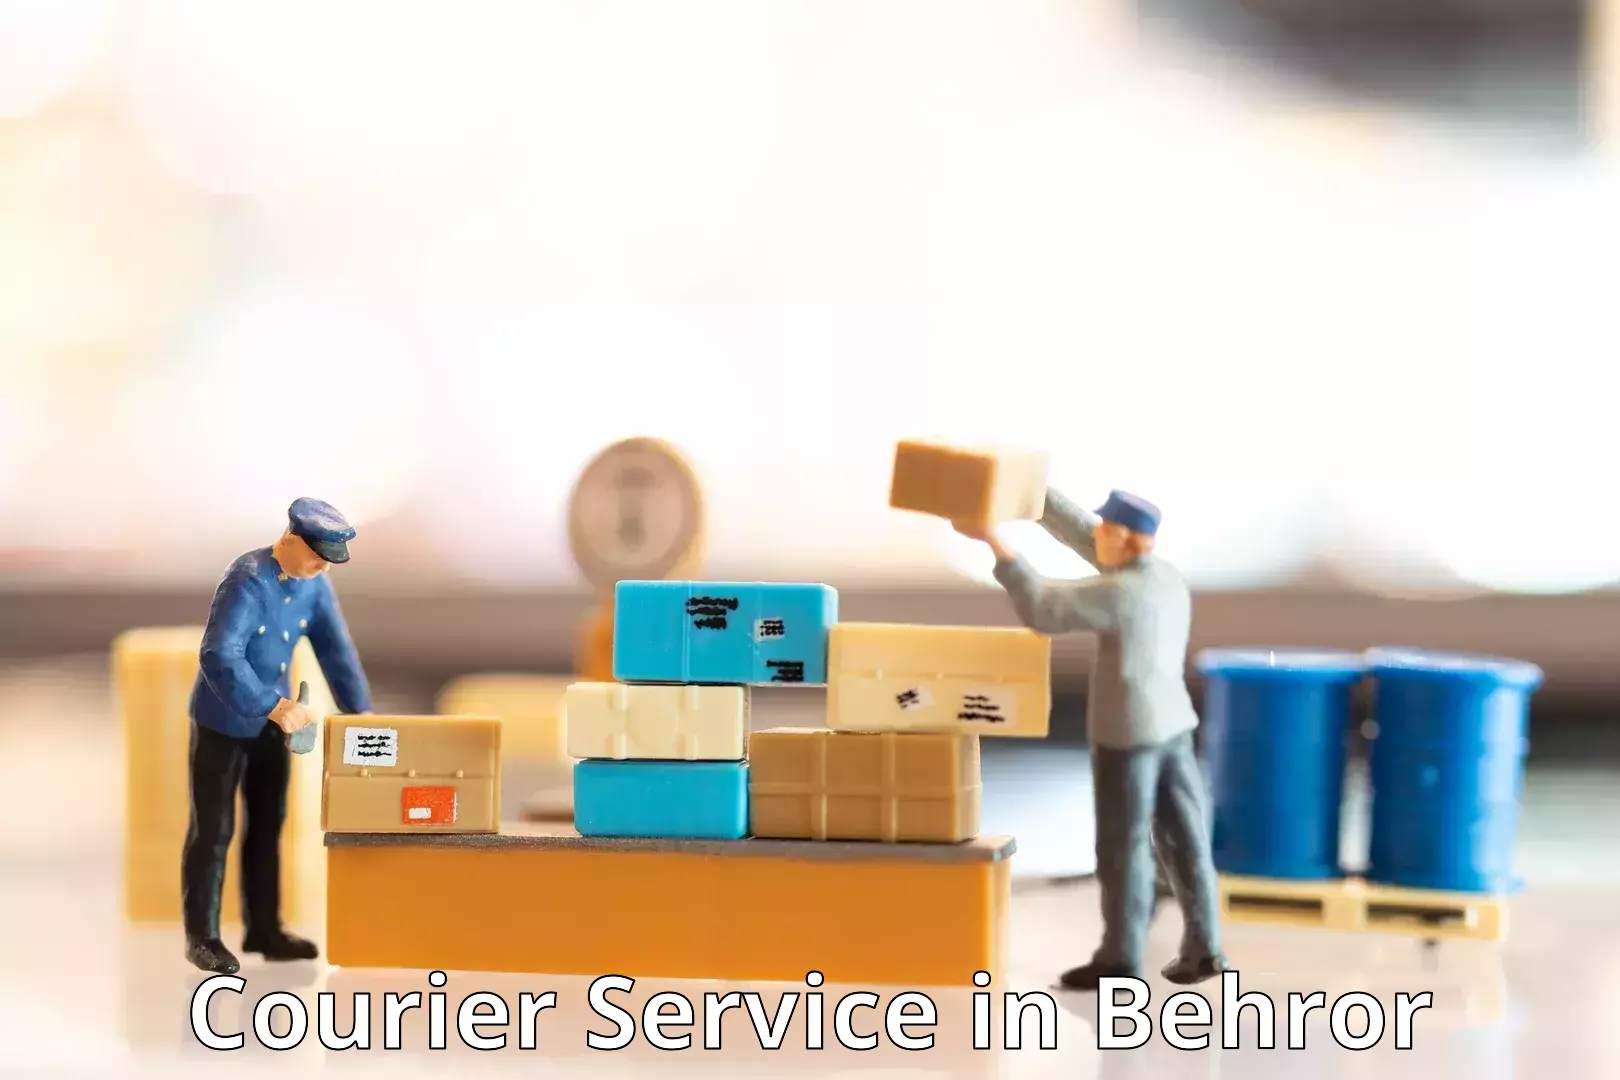 Flexible delivery schedules in Behror